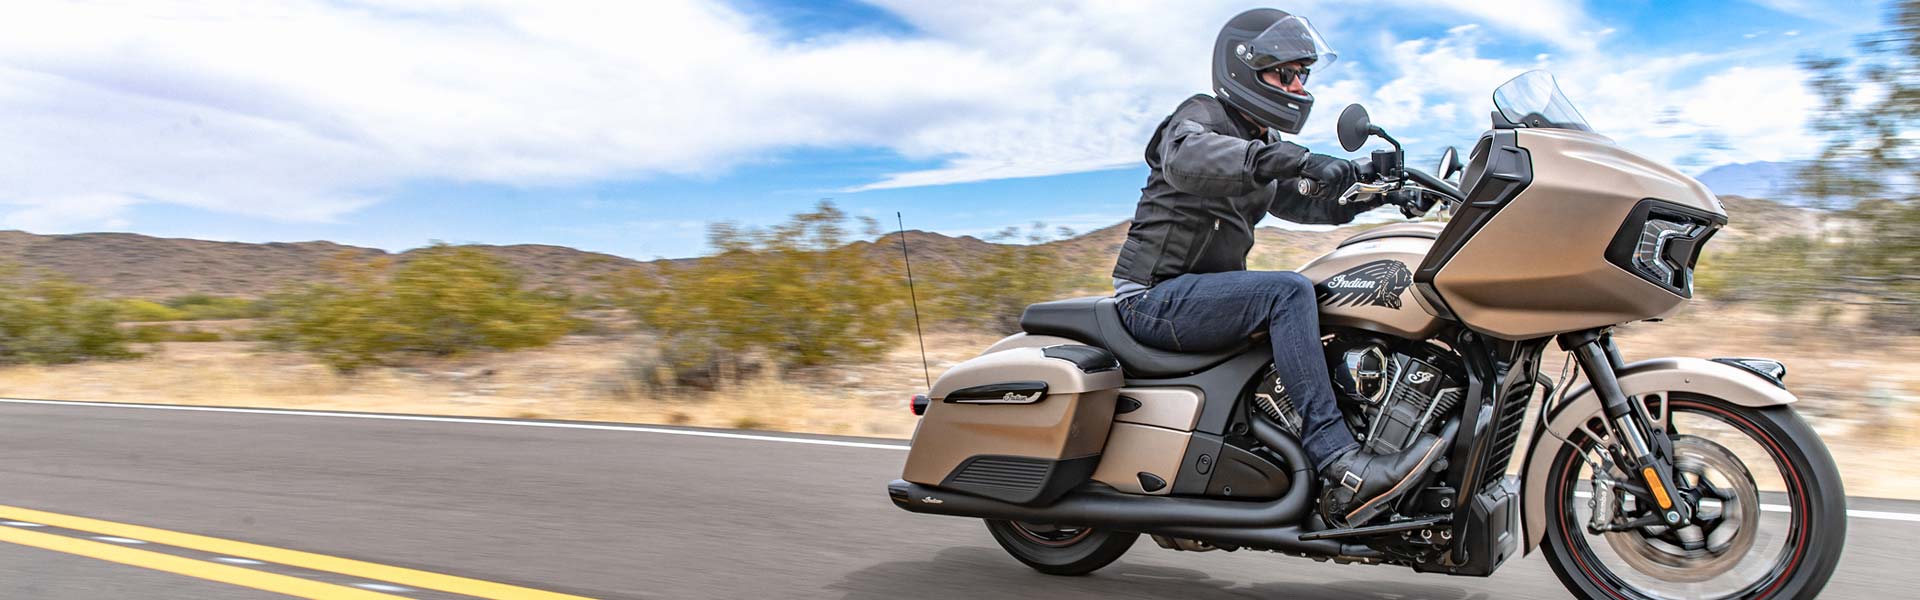 Indian Motorcycles Australia Specs Challenger Dark Horse Features